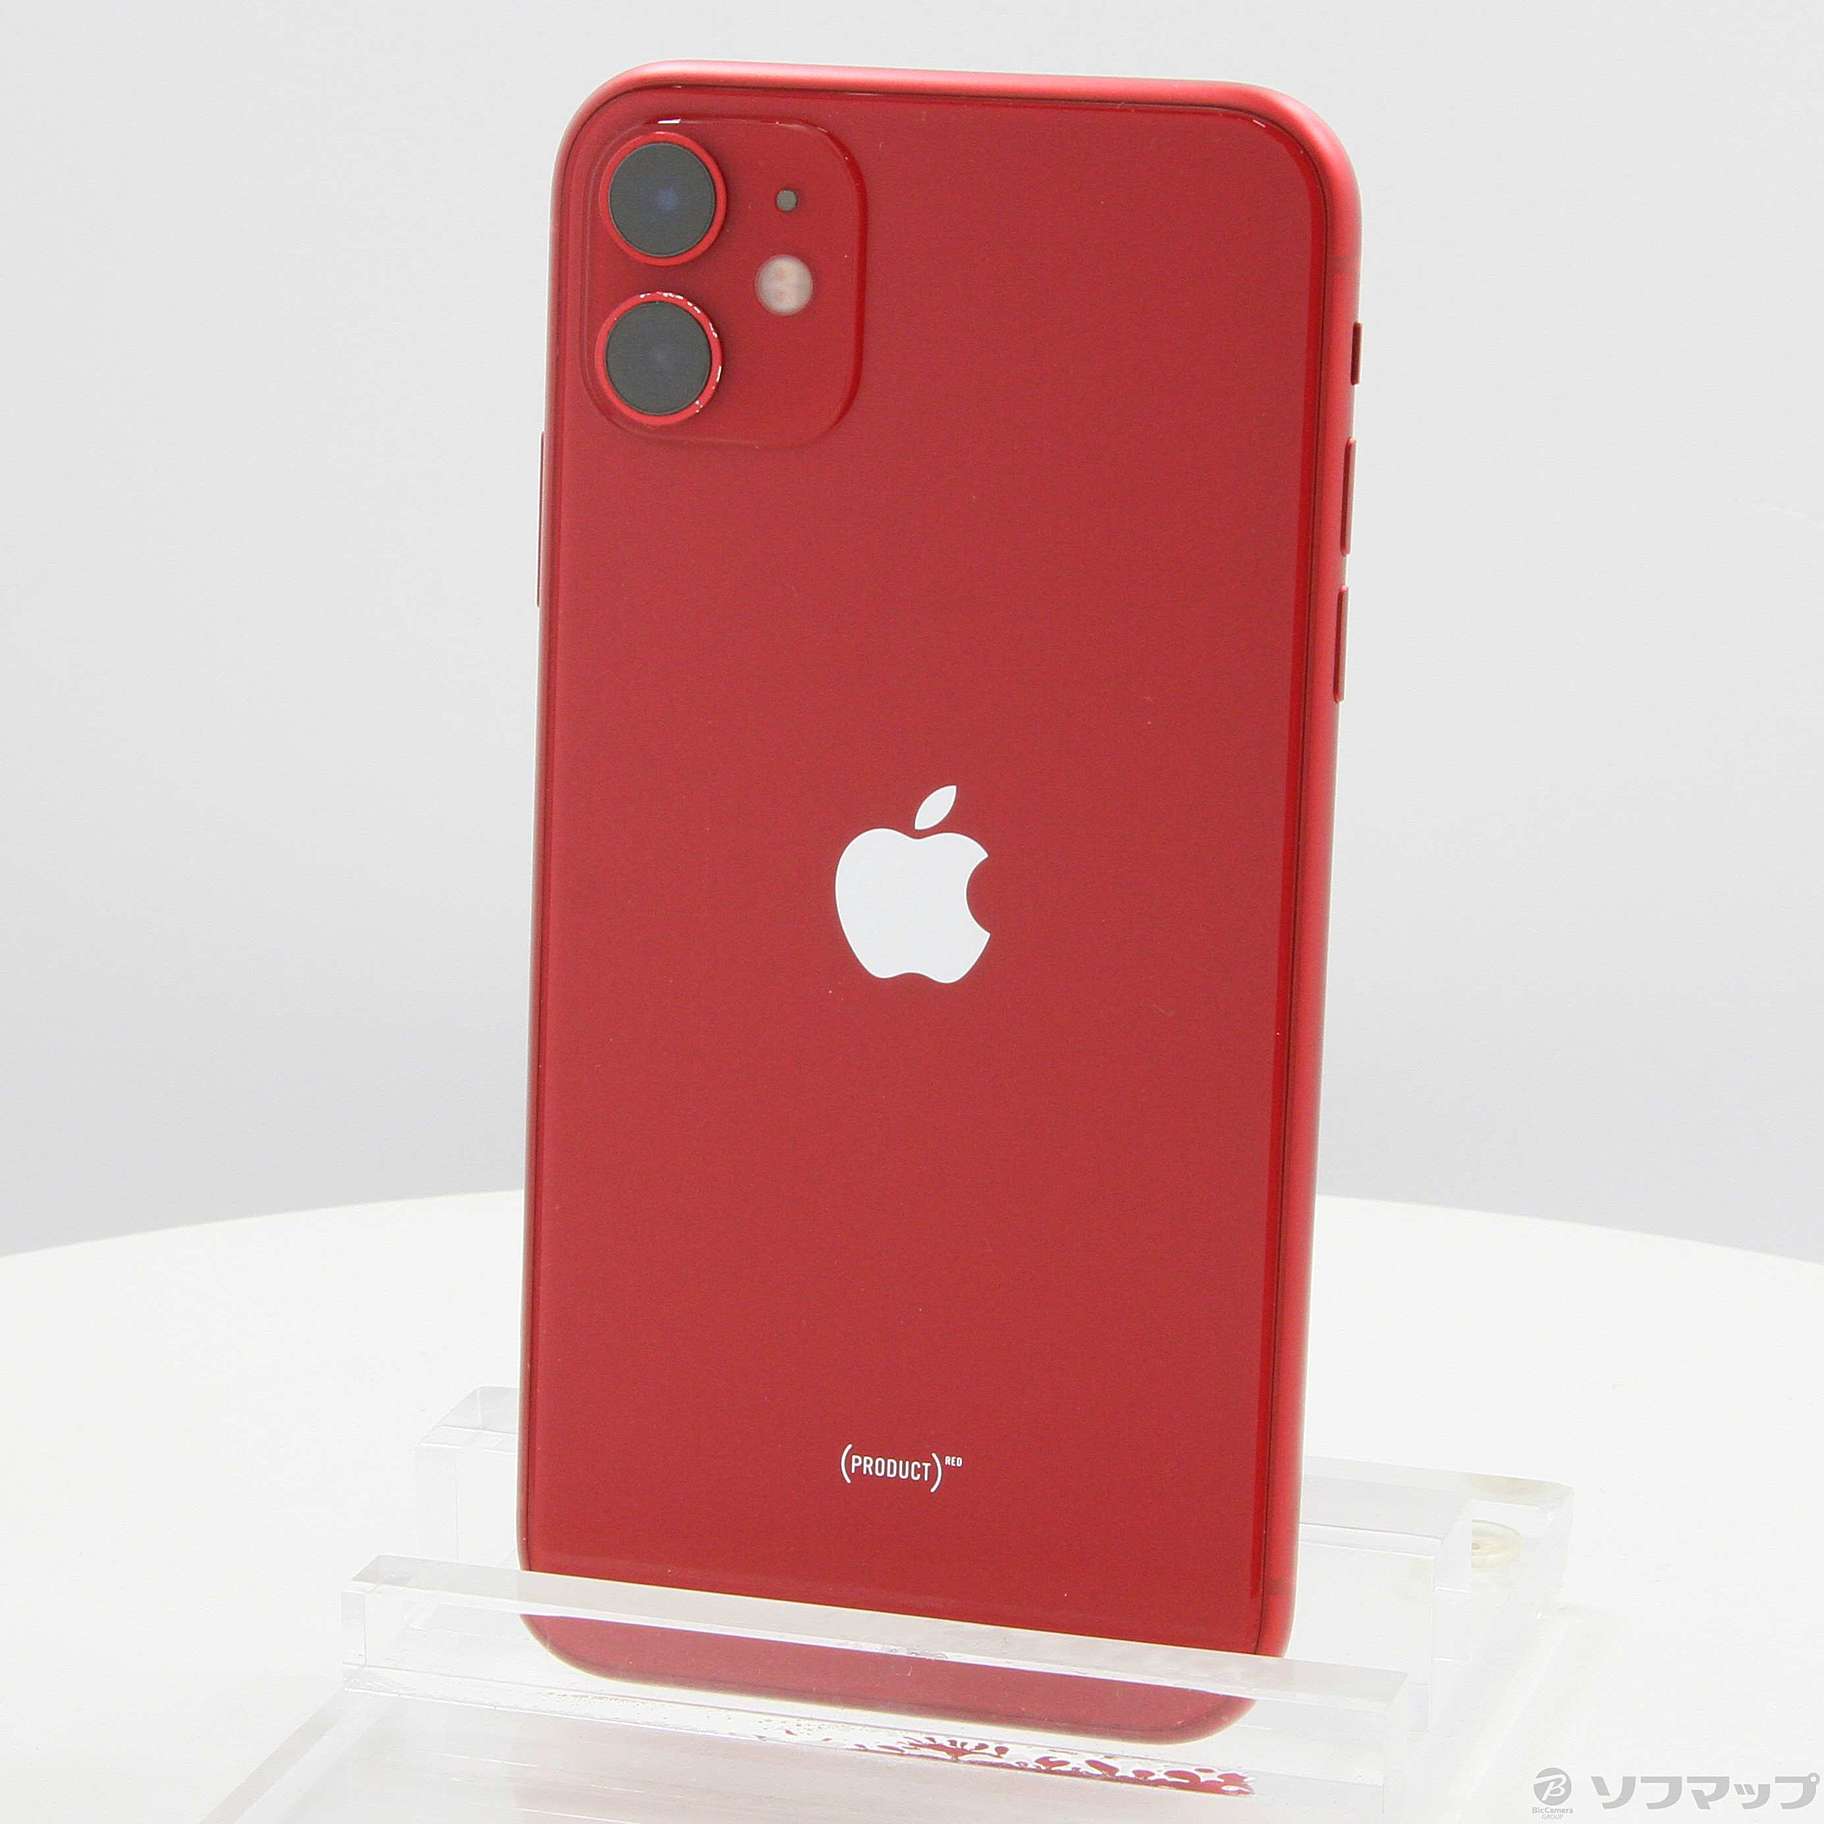 iPhone 11 (PRODUCT)RED 128 GB Softbankご連絡ありがとうございます